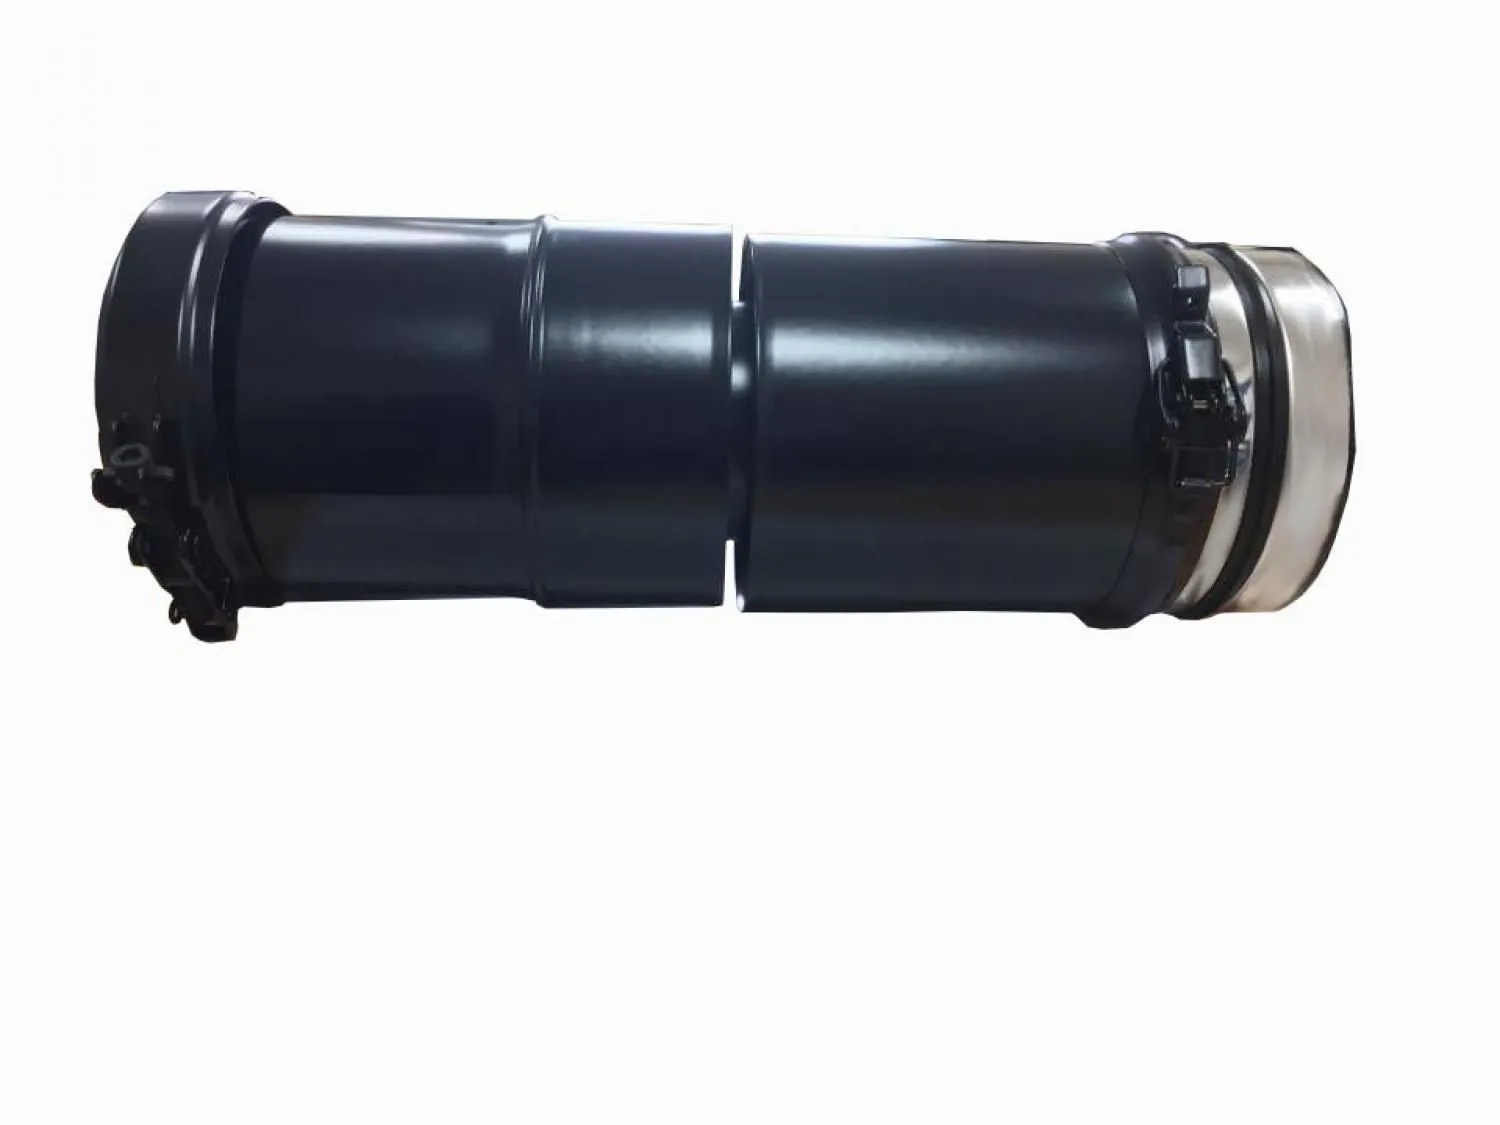 Grant 26-70 HL Vertical Adjustable Extension 275-450mm - 10-18"